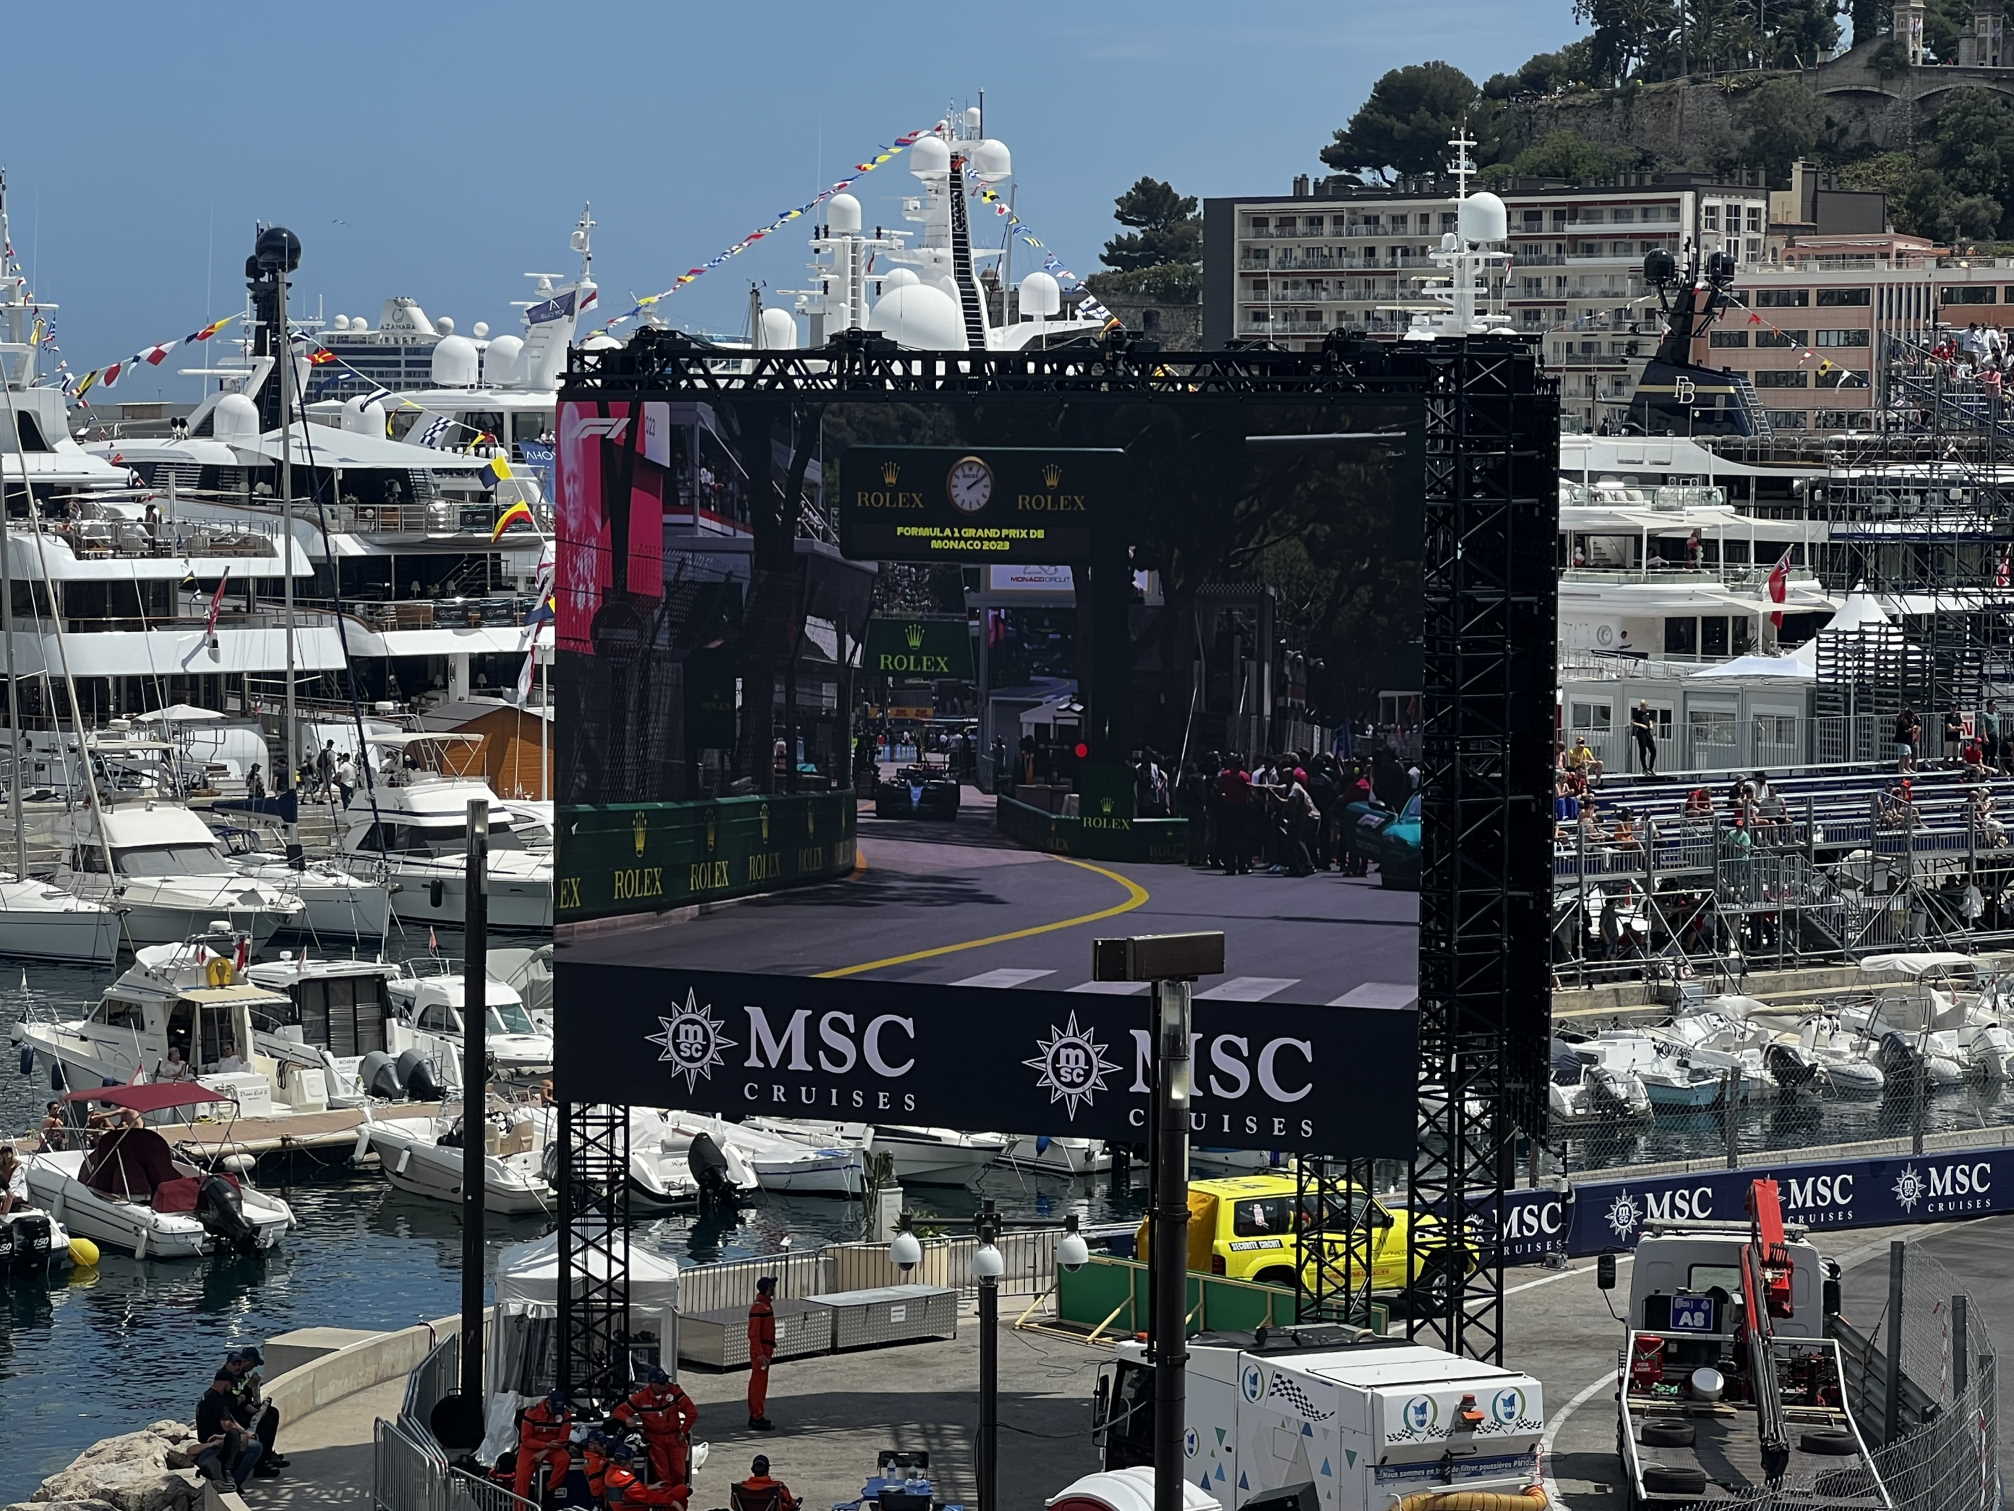 Obiteljski odmor Viliama Prodana na Azurnoj obali uz oktanski spektakl Formule 1 u Monte Carlu